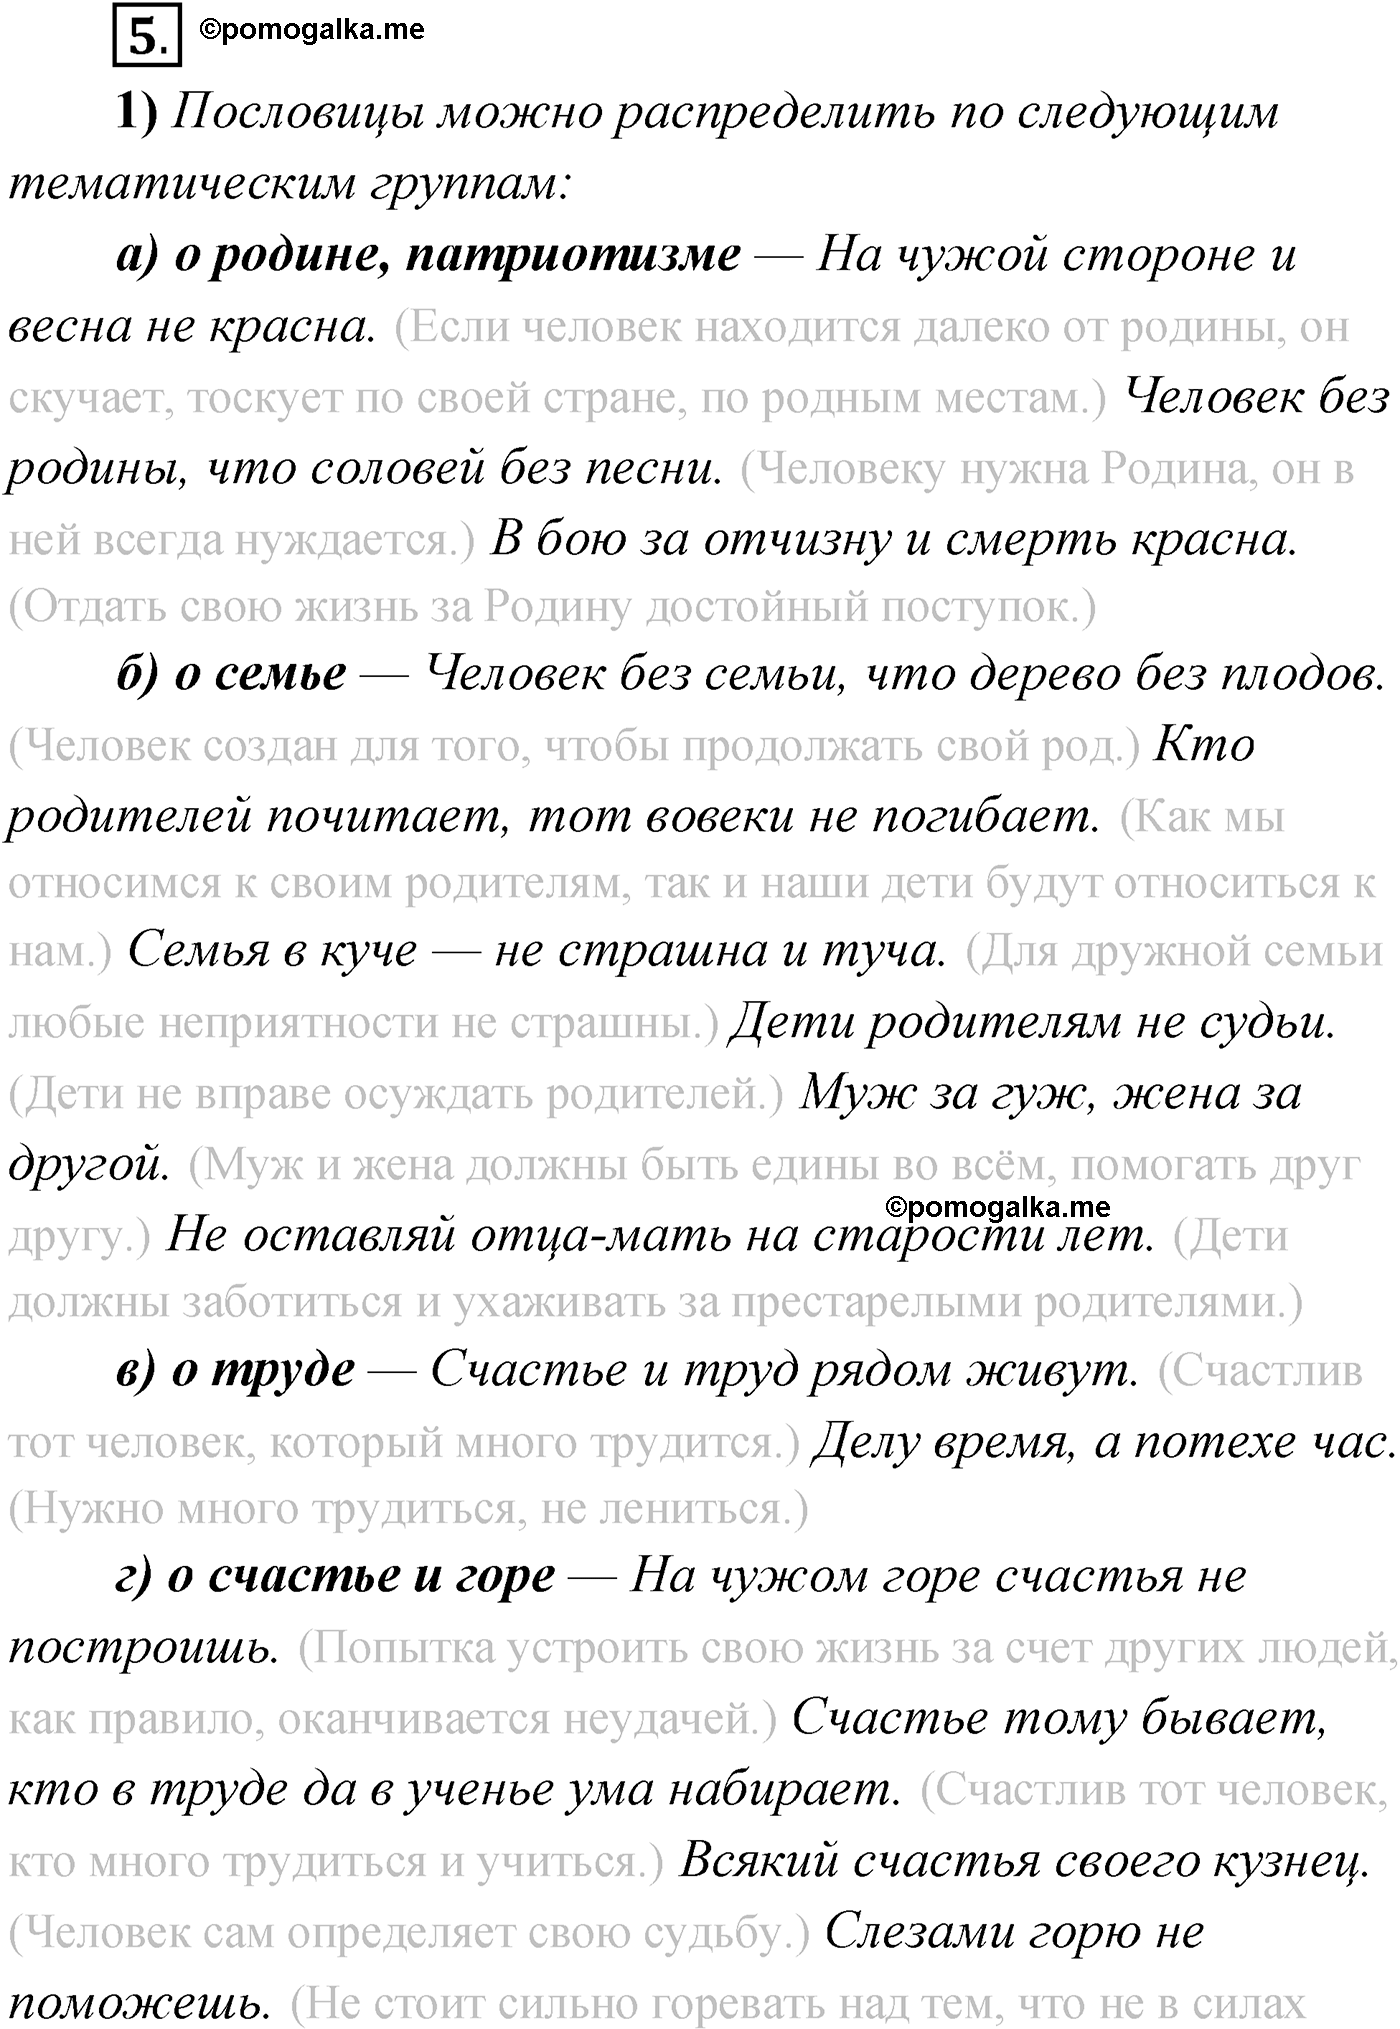 Русский язык 8 класс упр 450